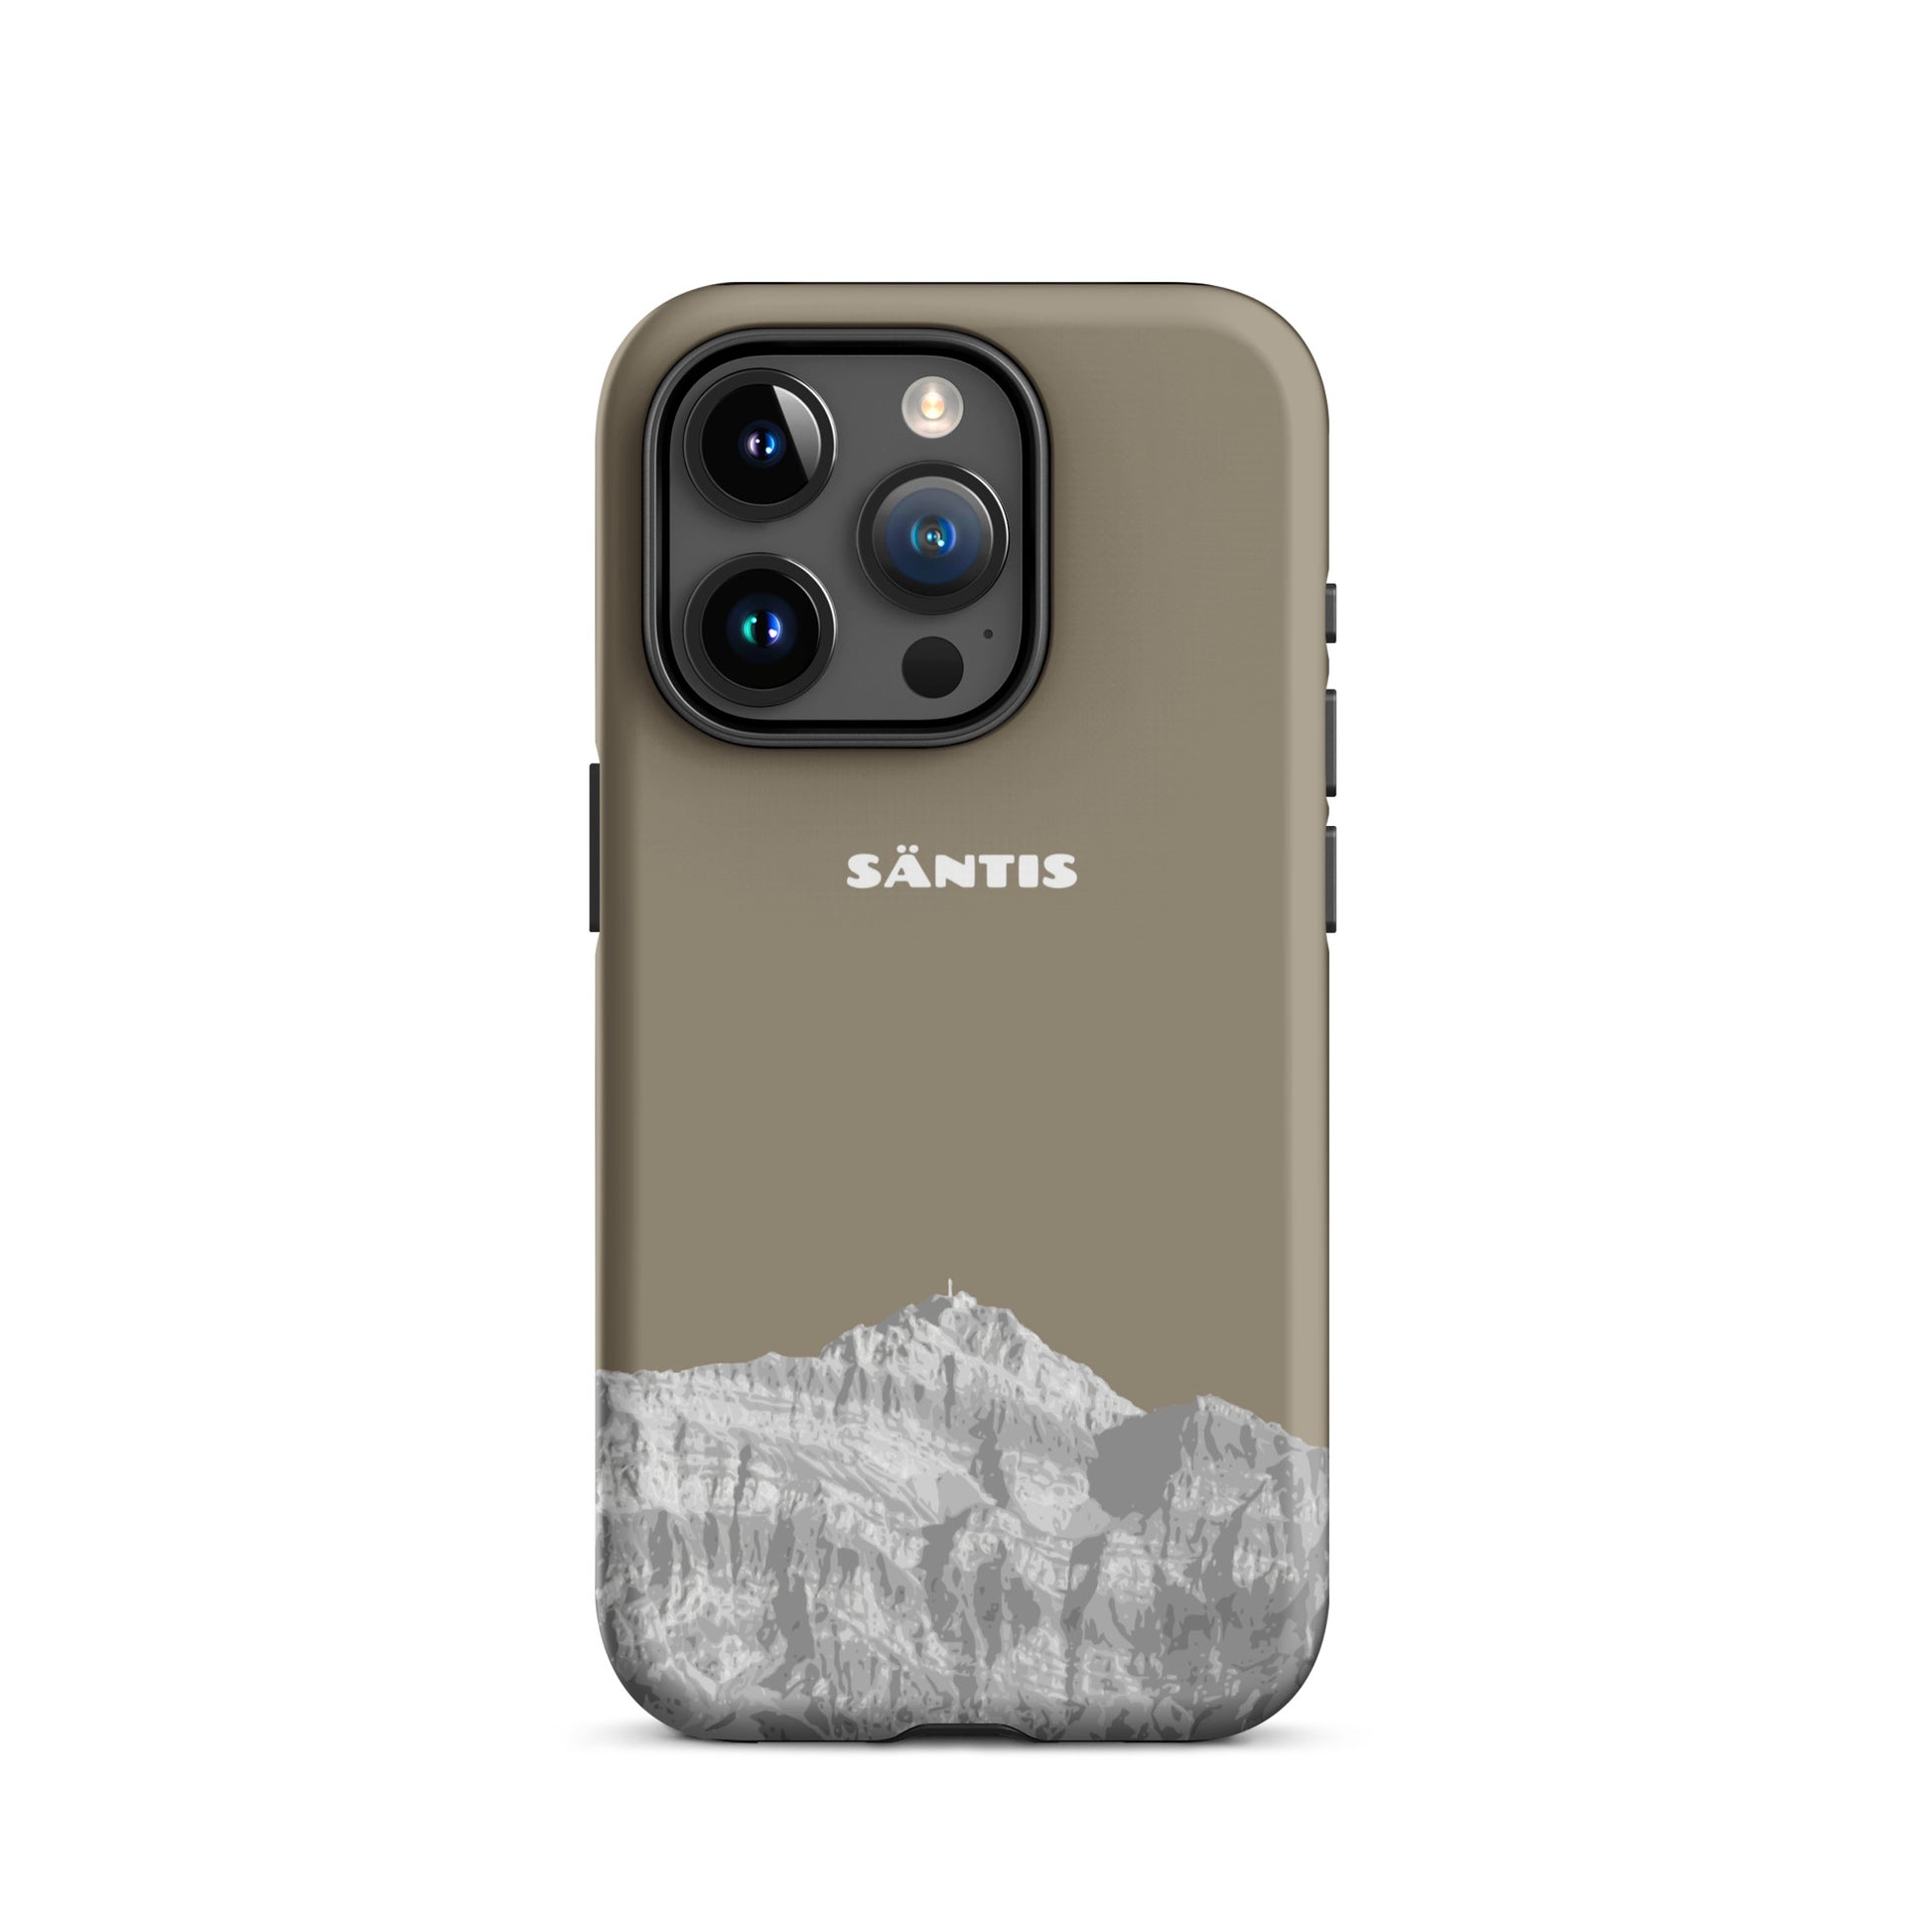 Hülle für das iPhone 15 Pro von Apple in der Farbe Graubraun, dass den Säntis im Alpstein zeigt.